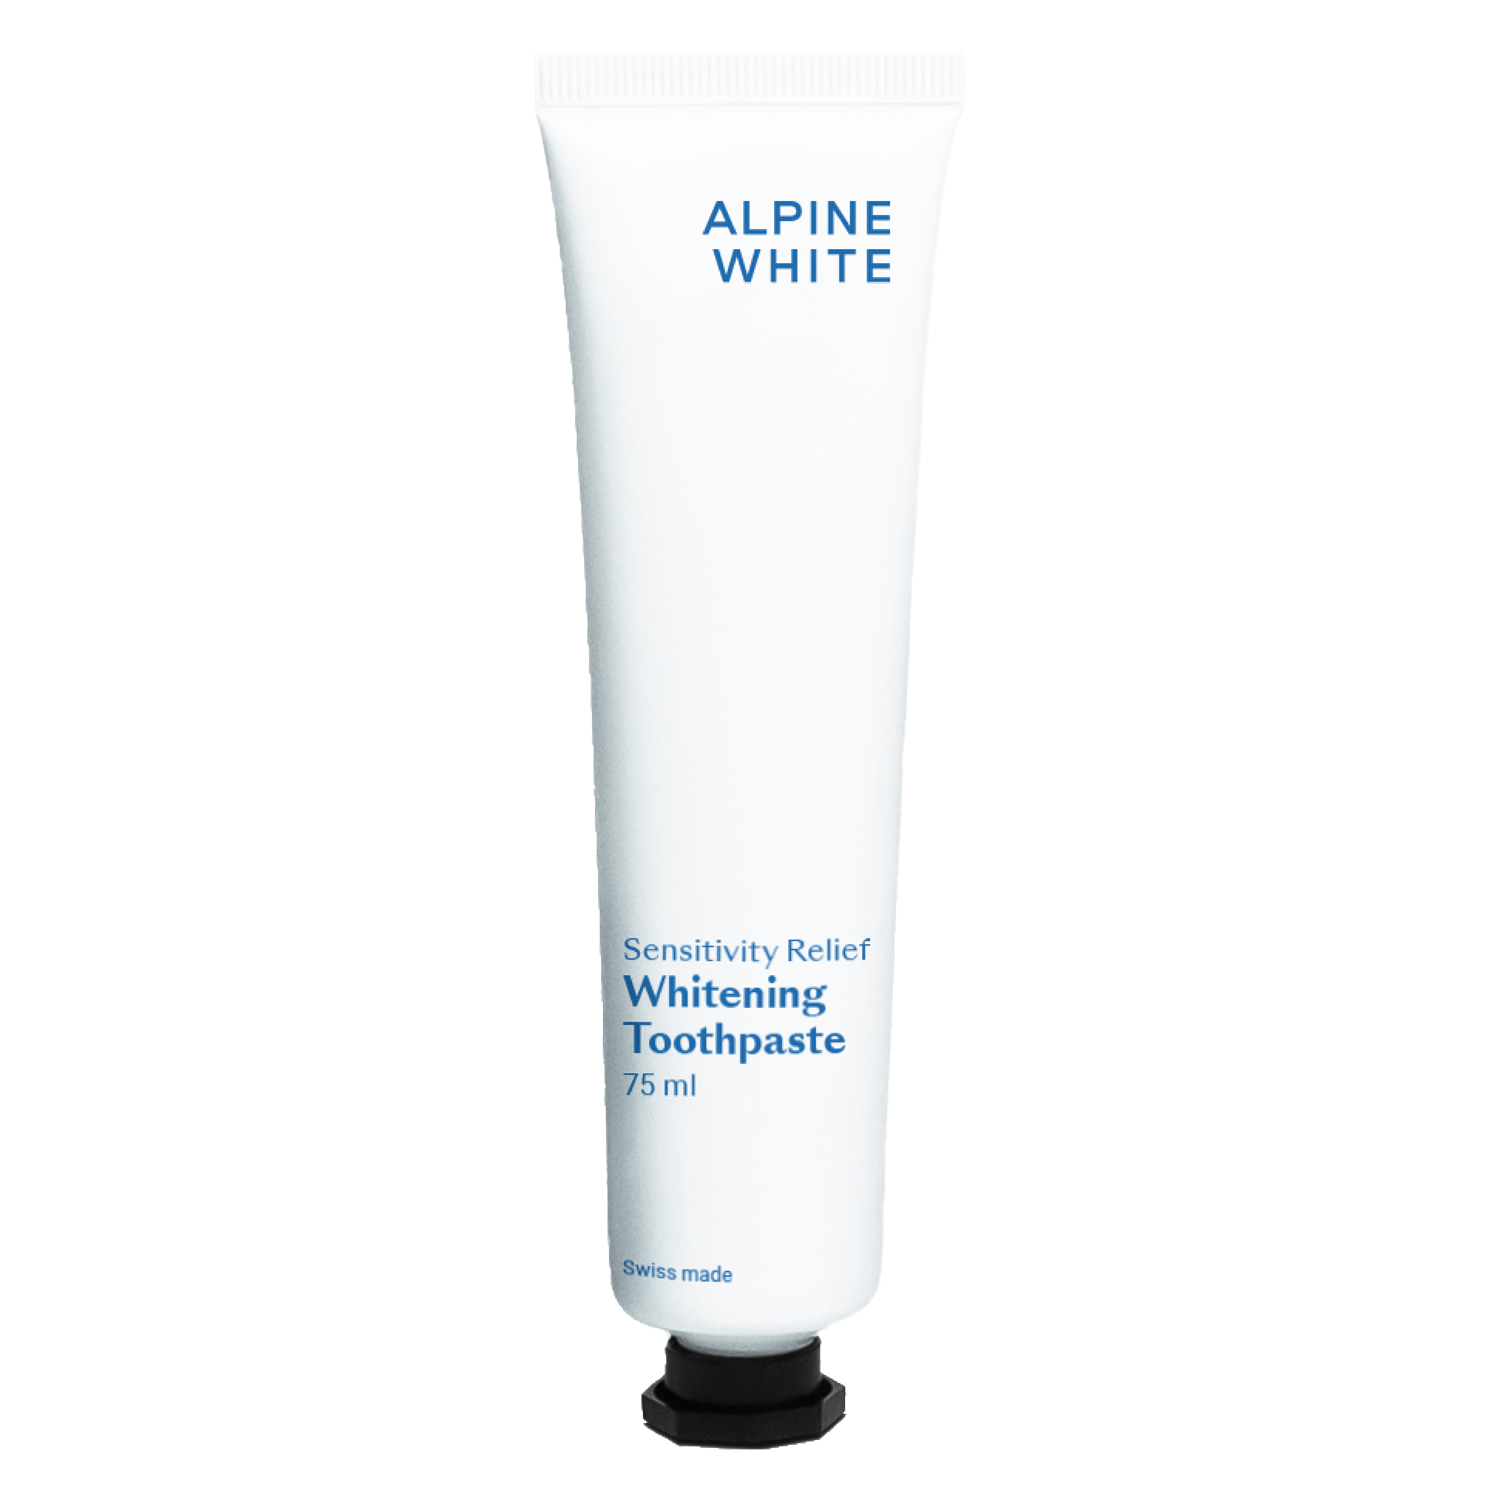 Produktbild von ALPINE WHITE - Whitening Zahnpasta Sensitivity Relief